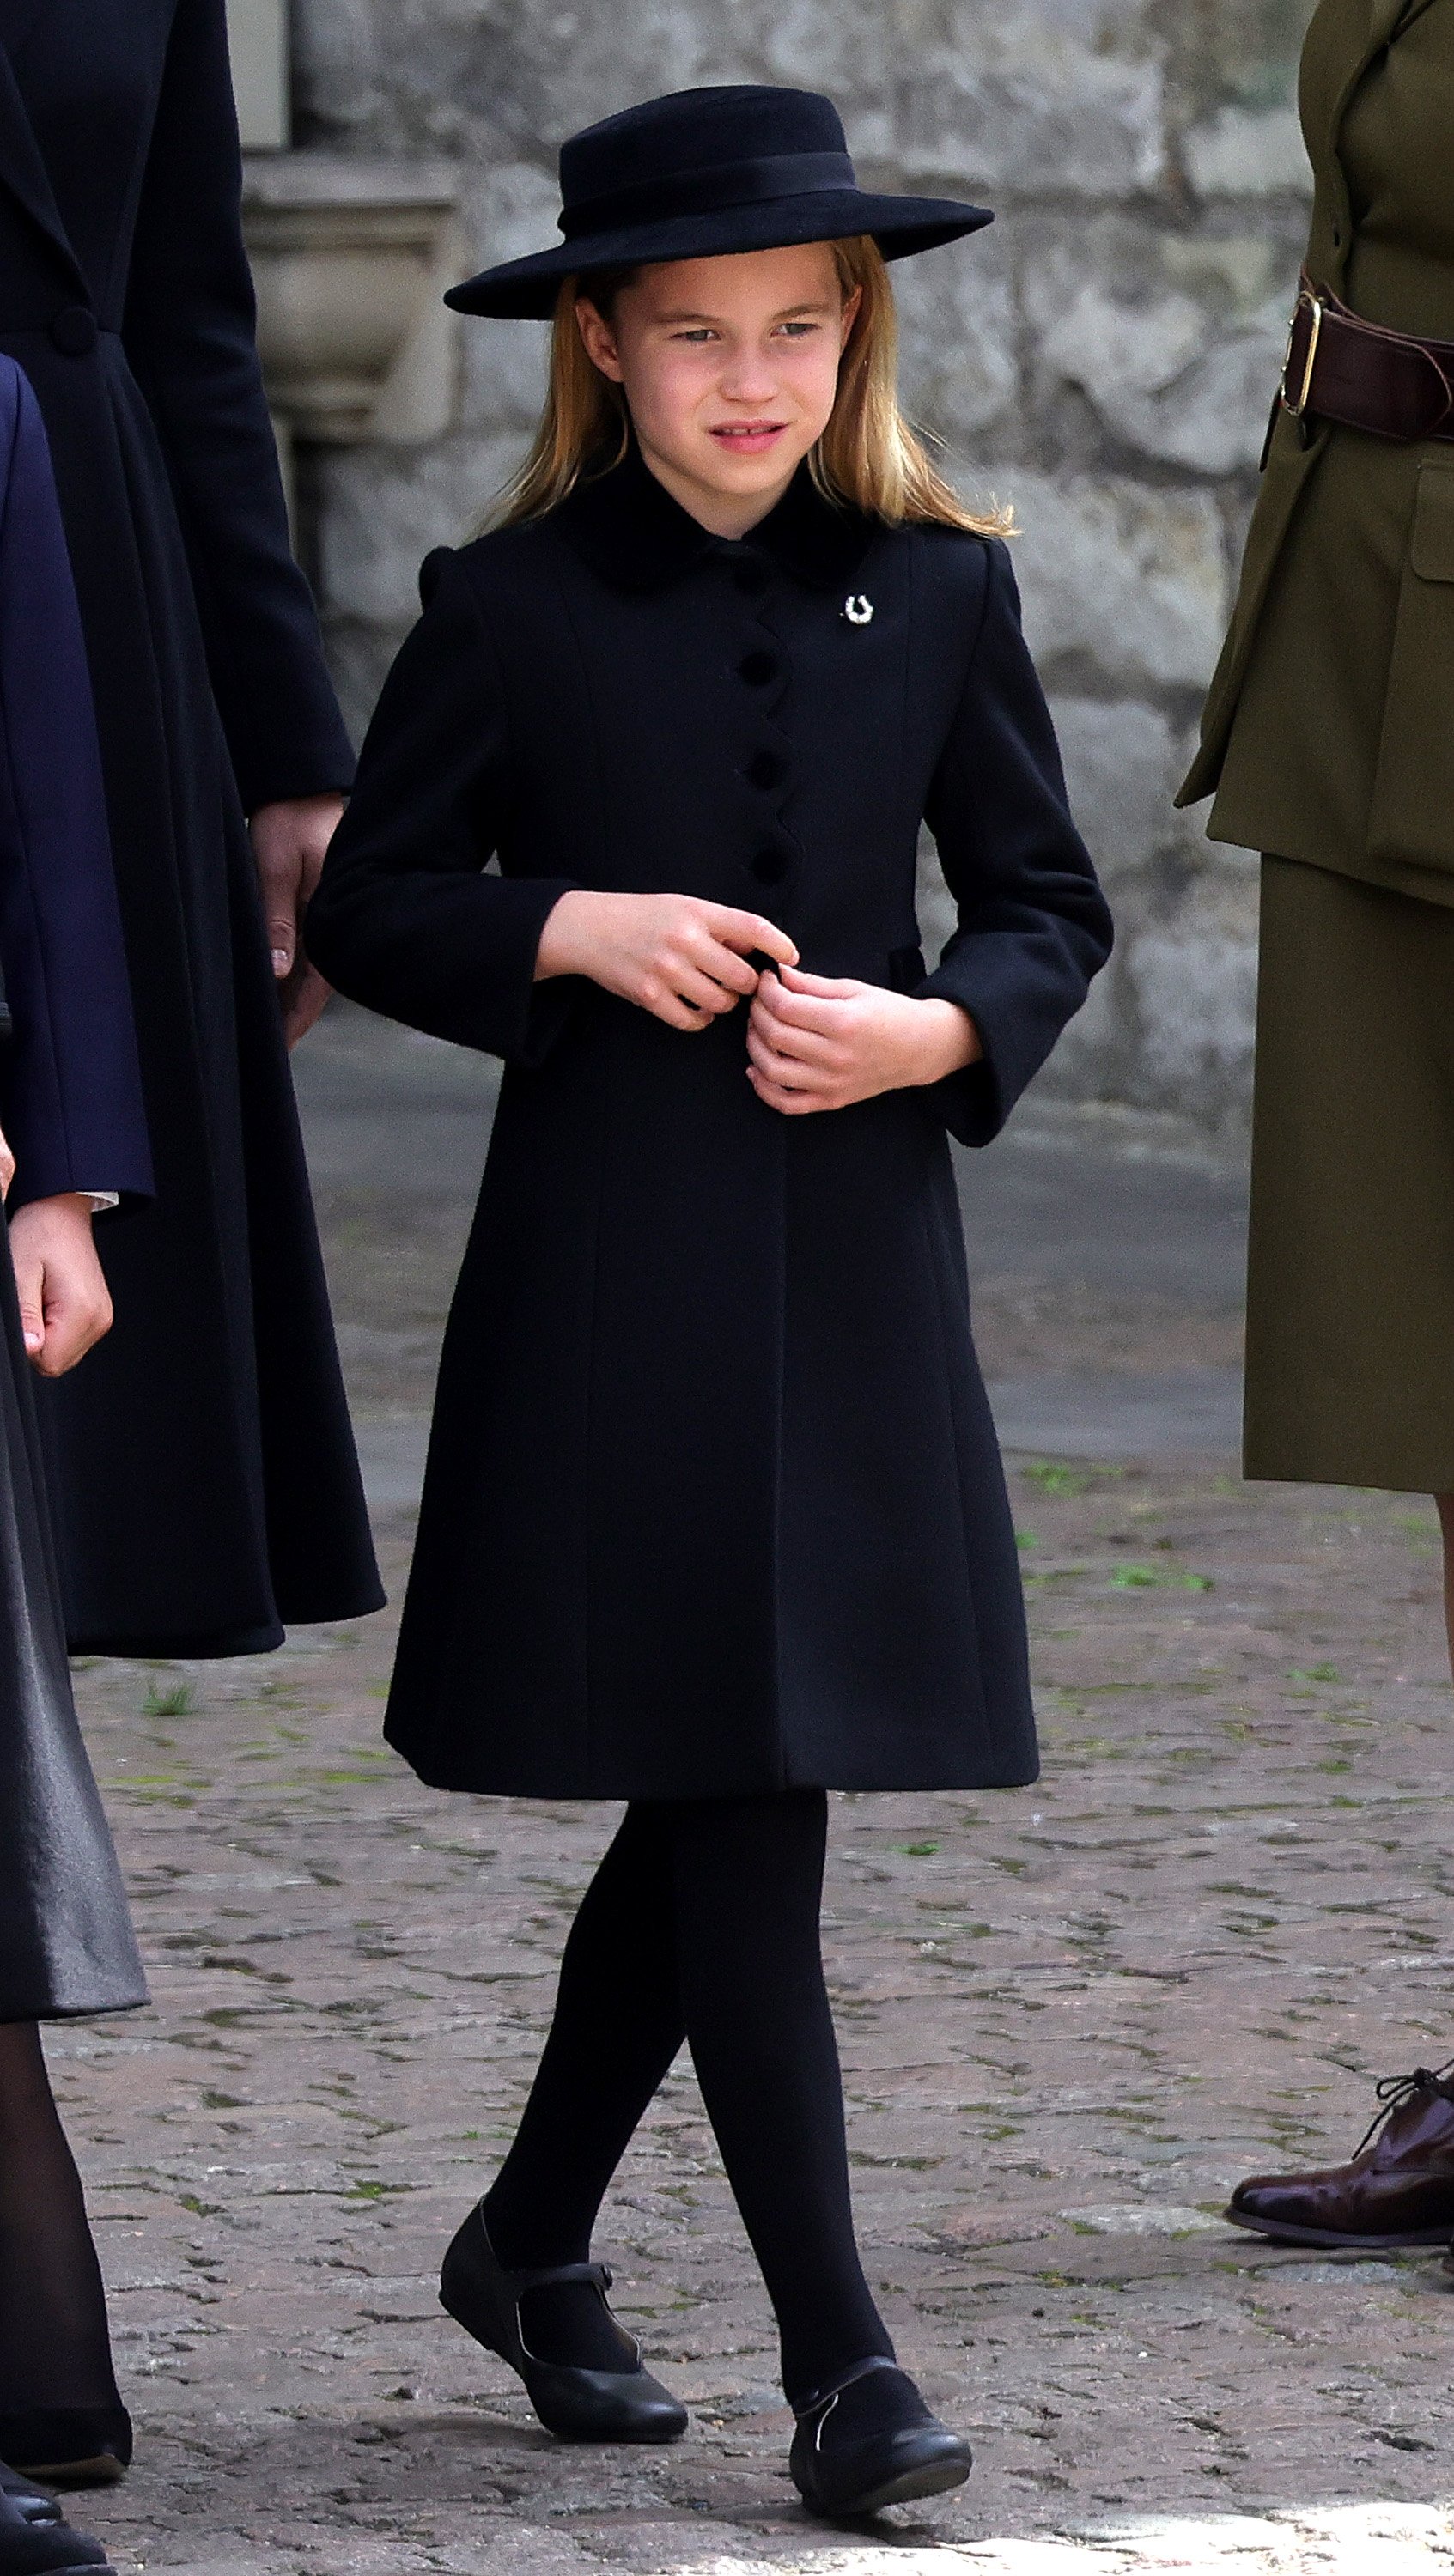 La princesse Charlotte est vue lors des funérailles nationales de la reine Élisabeth II à l'abbaye de Westminster le 19 septembre 2022 à Londres, en Angleterre | Source : Getty Images